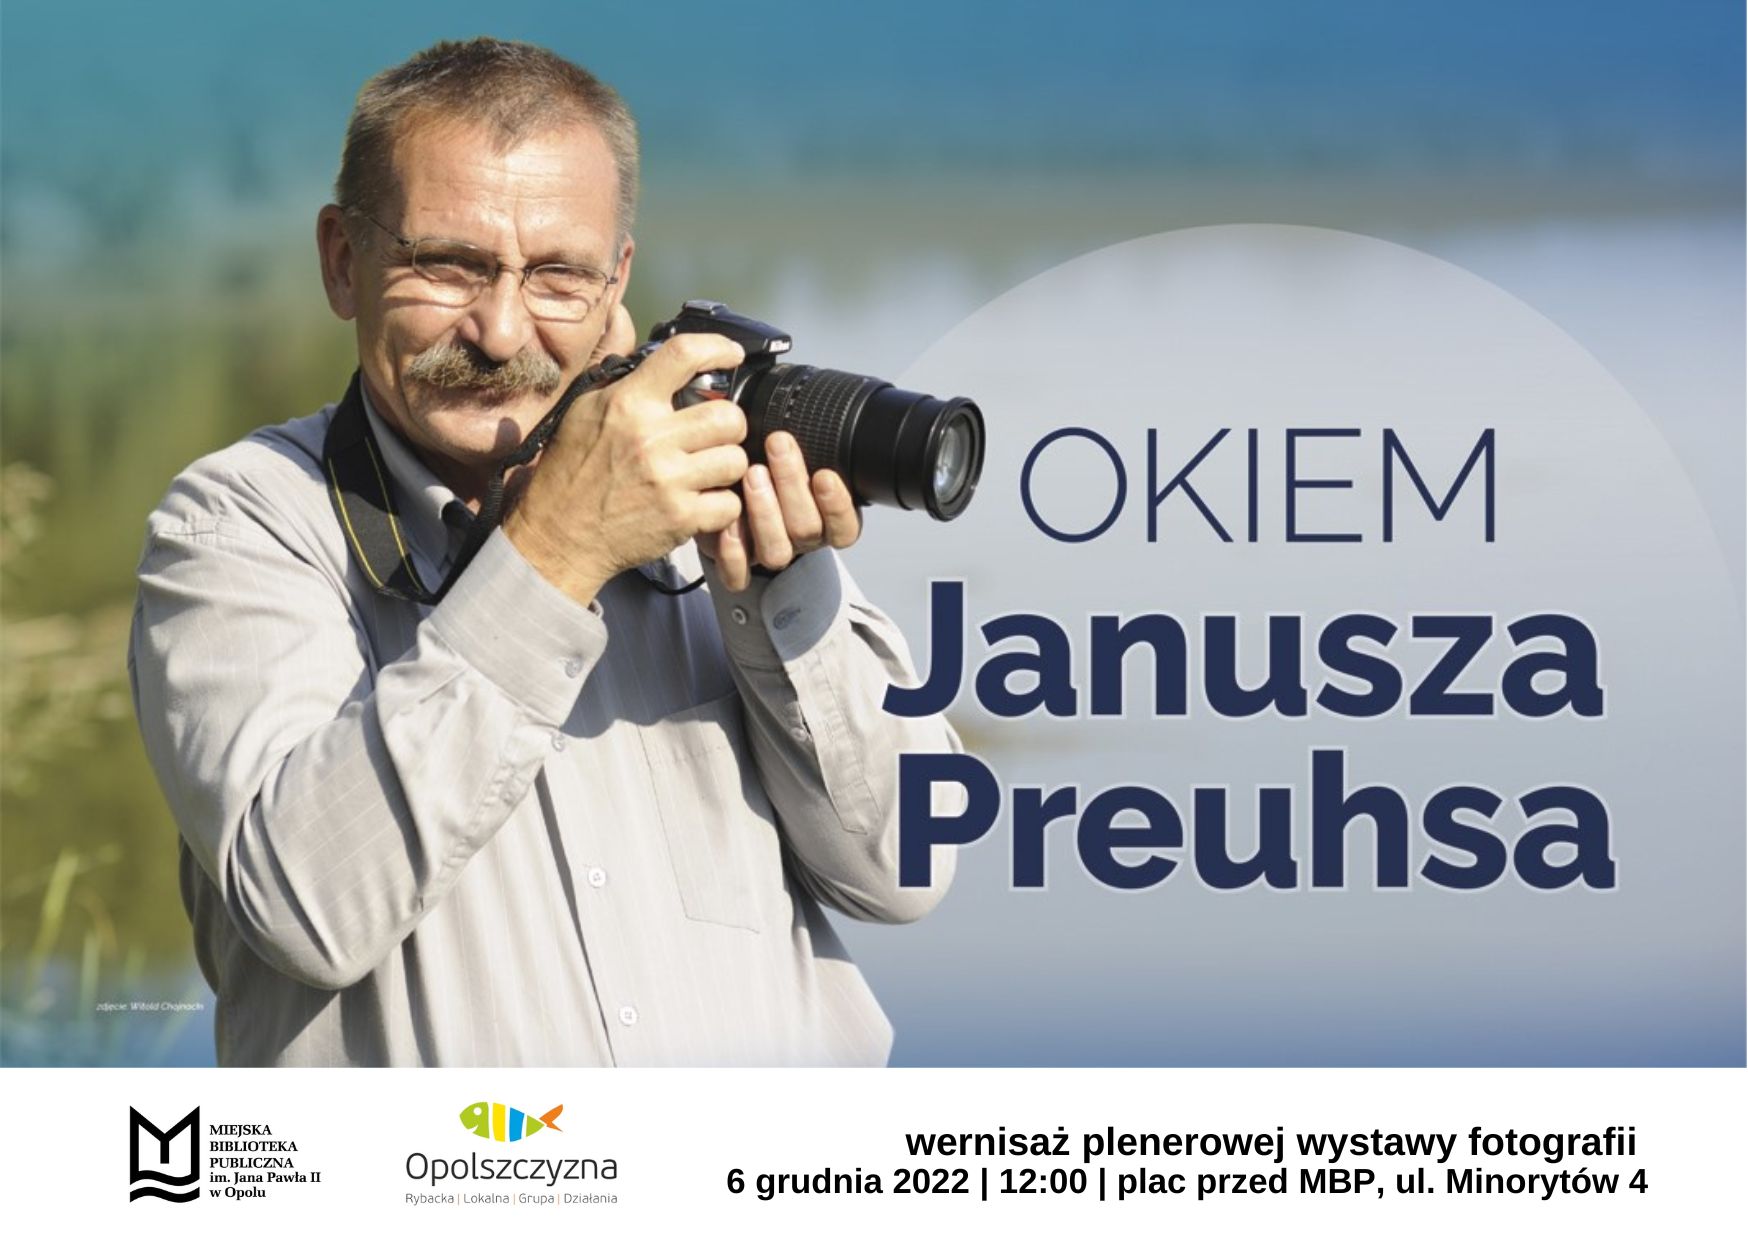 Okiem Janusza Preuhsa – wystawa fotografii Janusza Preuhsa